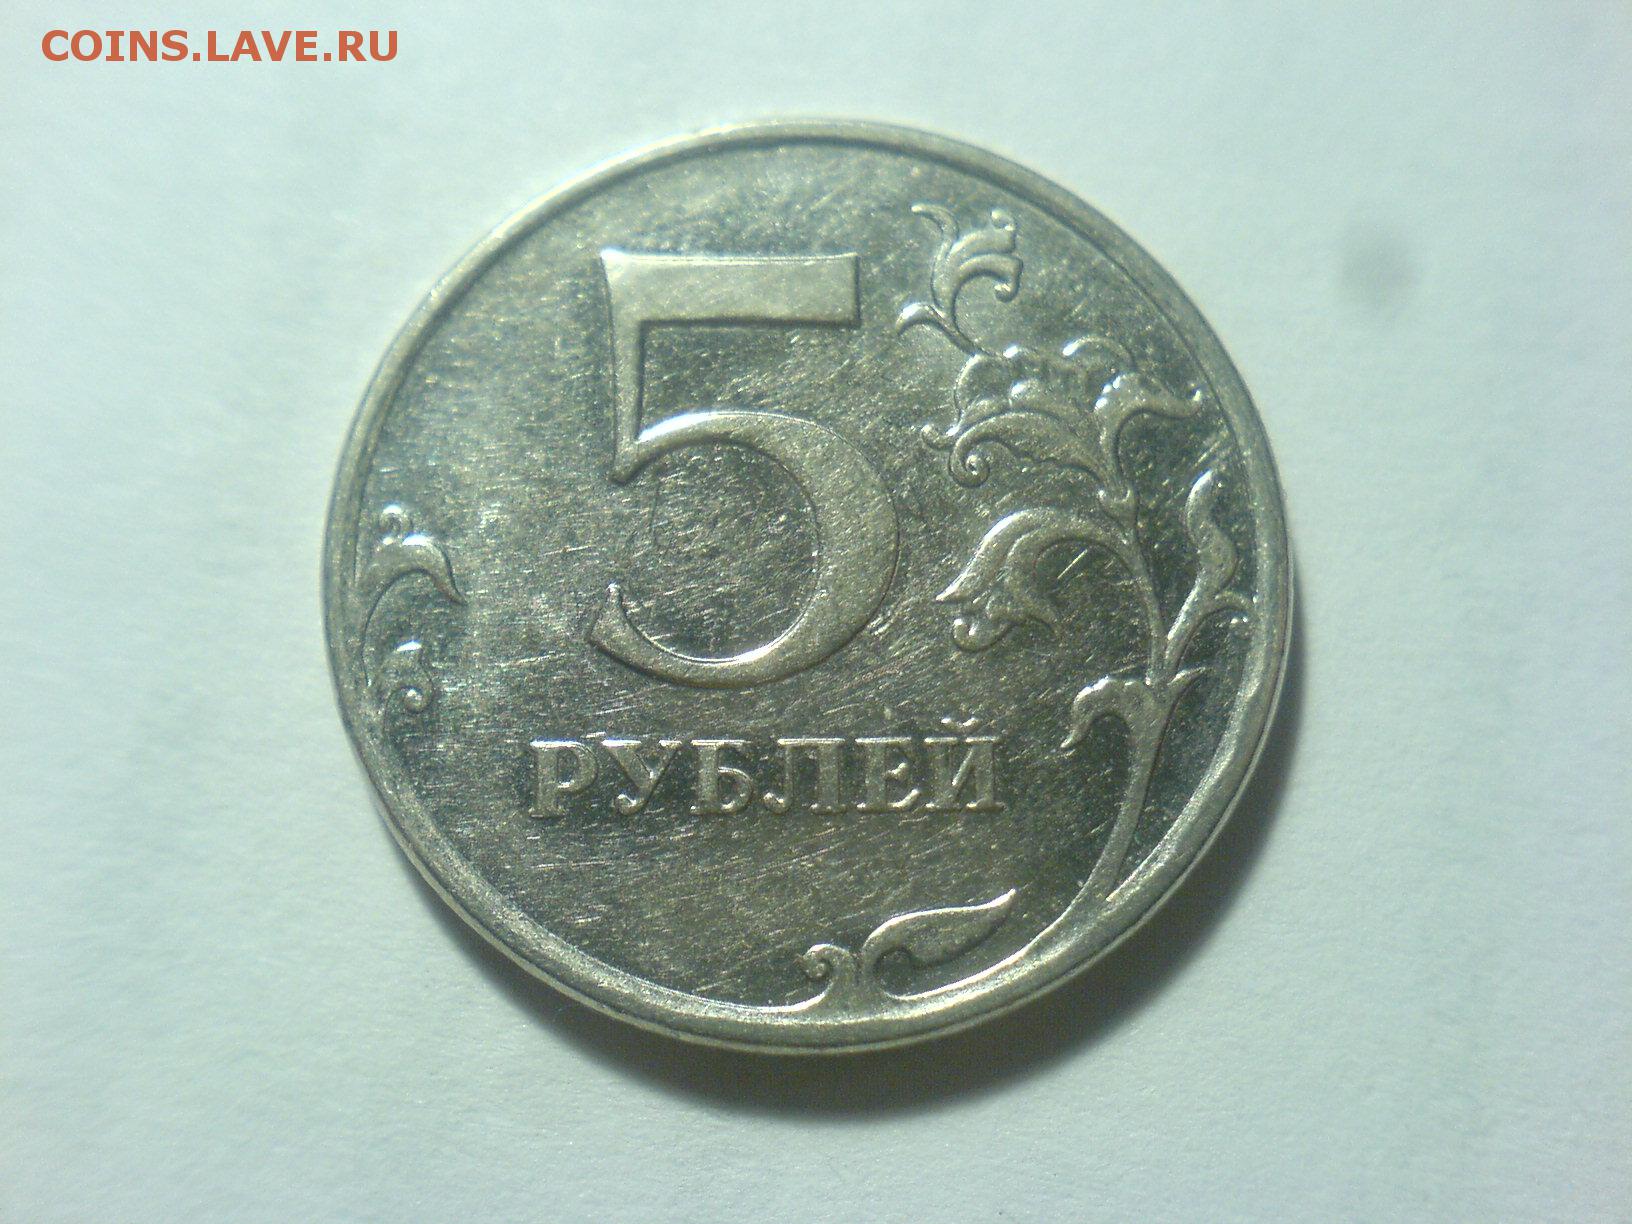 Продажа 5 рублей. 5 Рублей 2010 ММД. Редкие монеты 5 рублей 1992 ММД. ММД, шт. Б. 5 Рублей 2010 года продать.